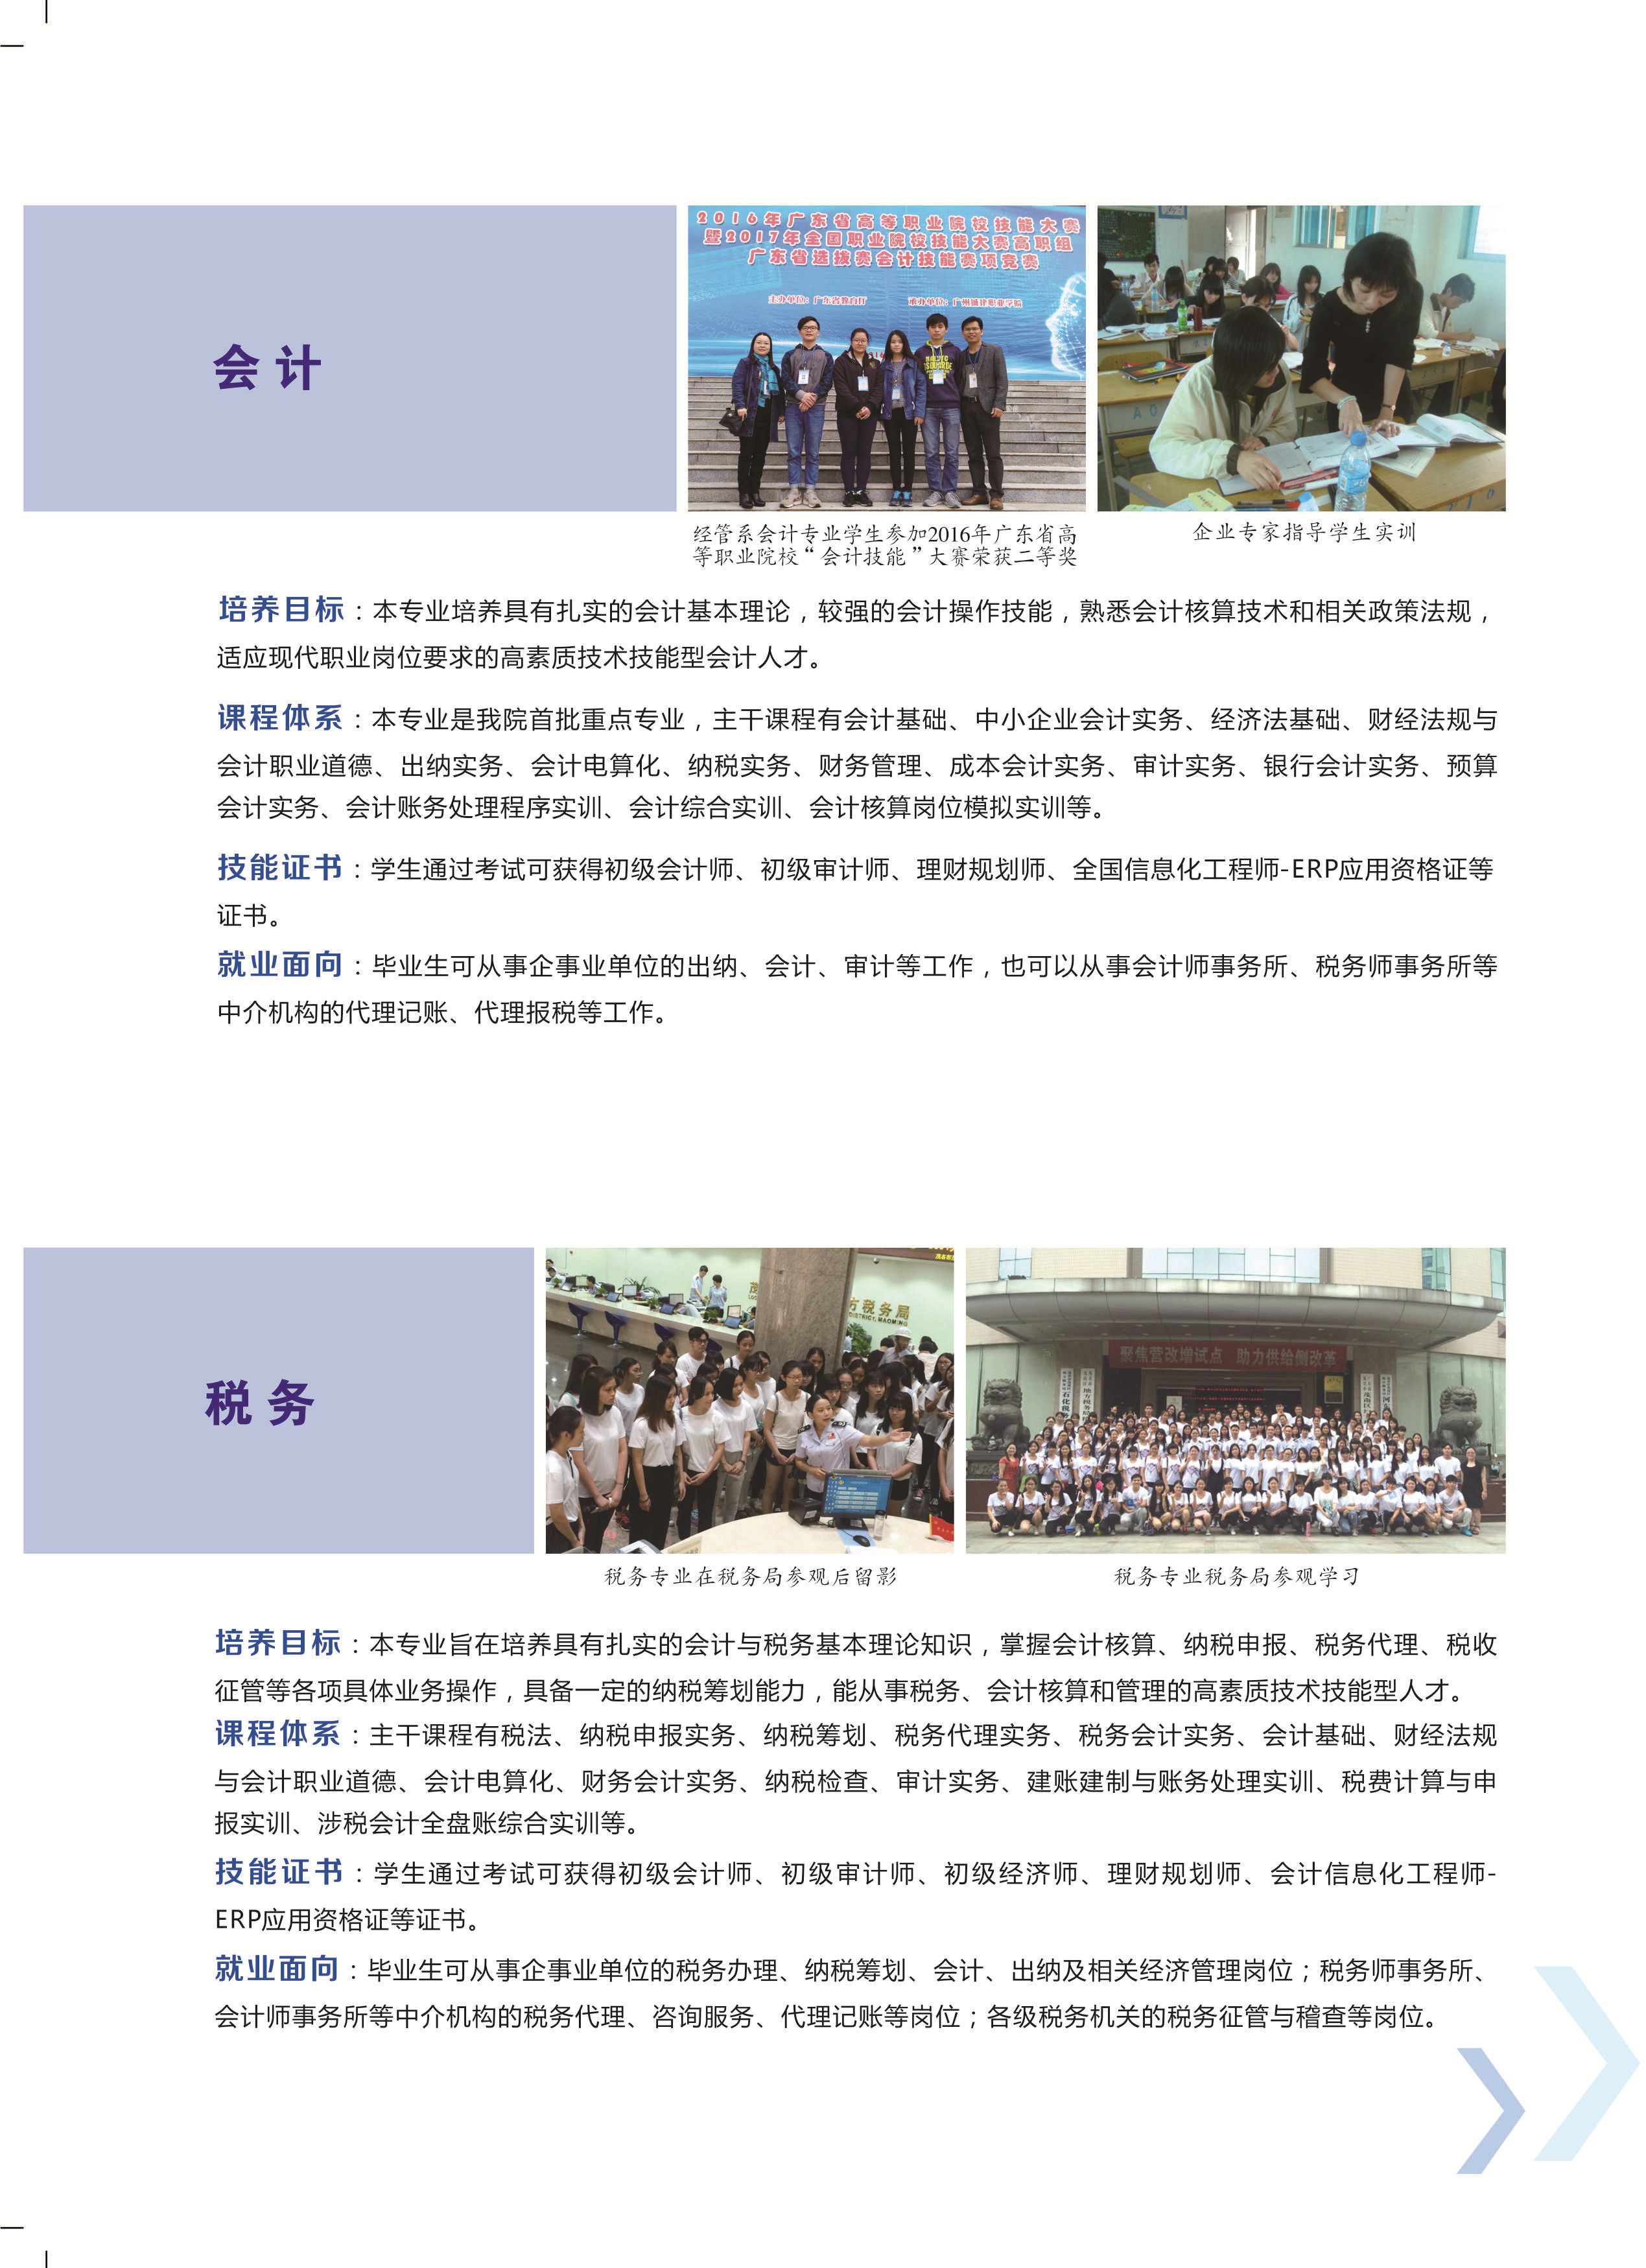 茂名职业技术学院高职高考,南京工业职业技术学院